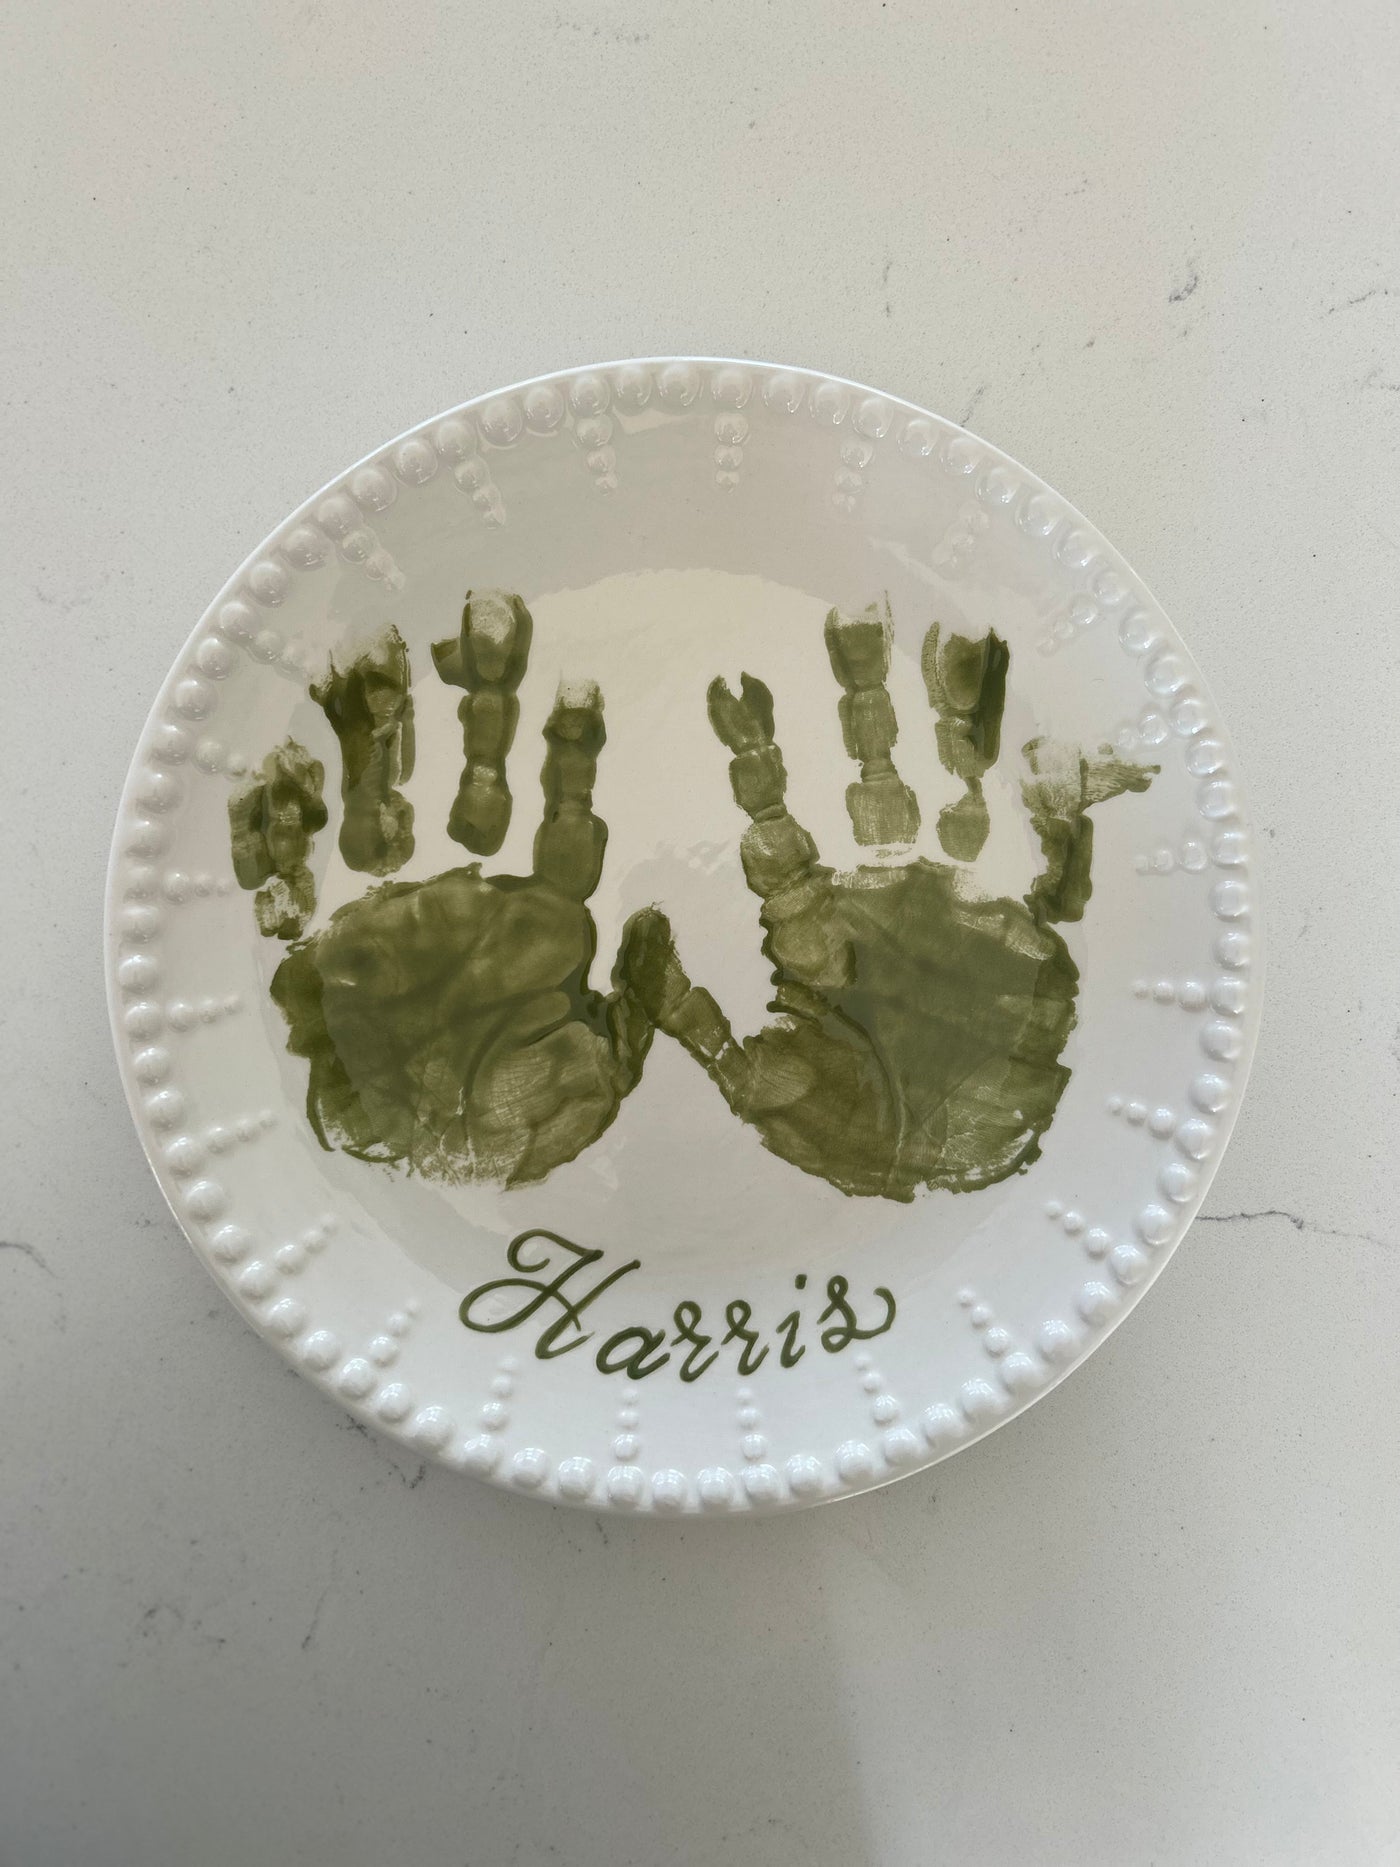 Handprint/Footprint Plate Signup